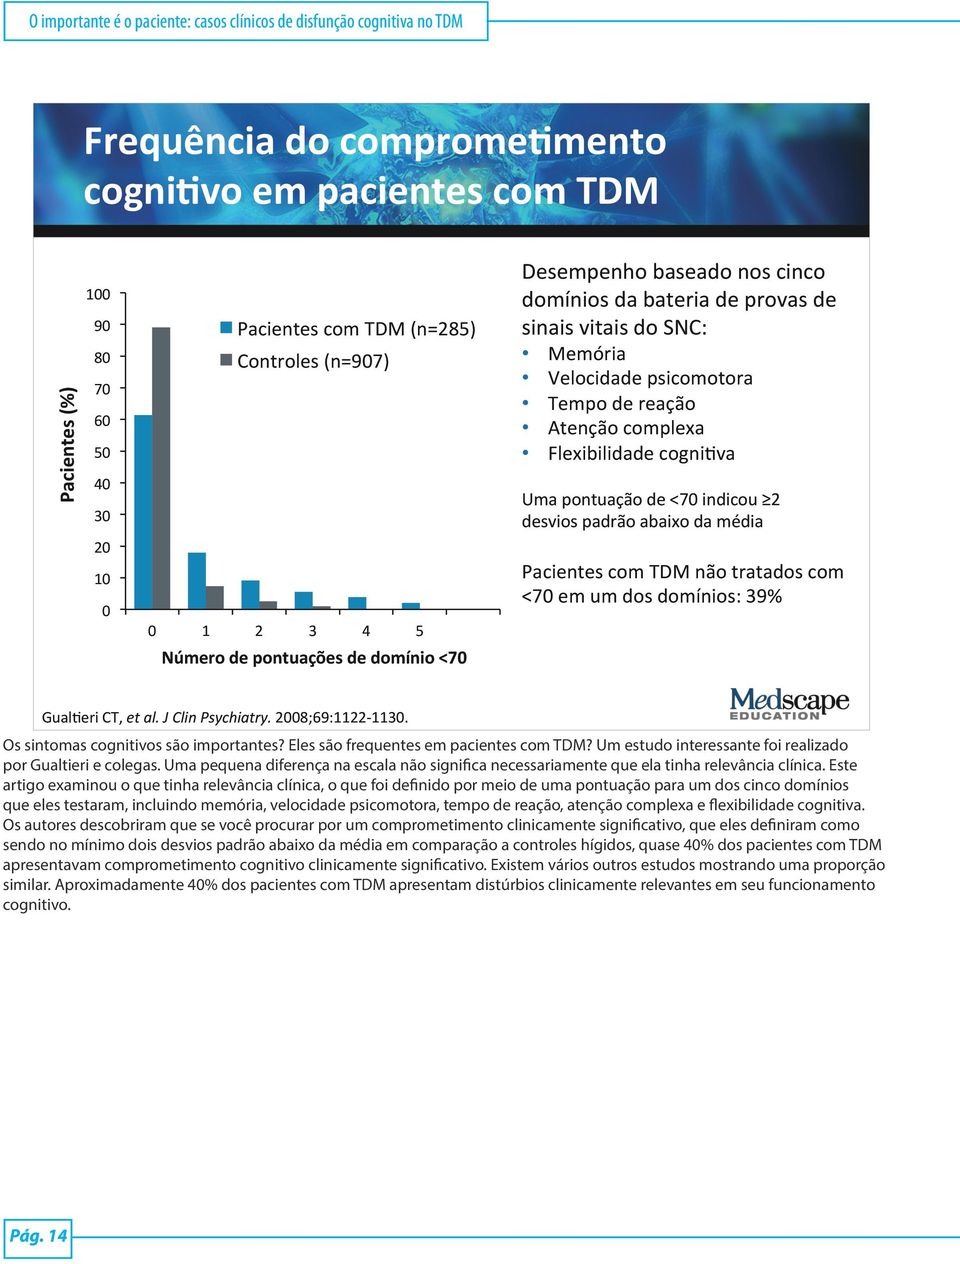 reação Atenção complexa Flexibilidade cognieva Uma pontuação de <70 indicou 2 desvios padrão abaixo da média Pacientes com TDM não tratados com <70 em um dos domínios: 39% GualEeri CT, et al.